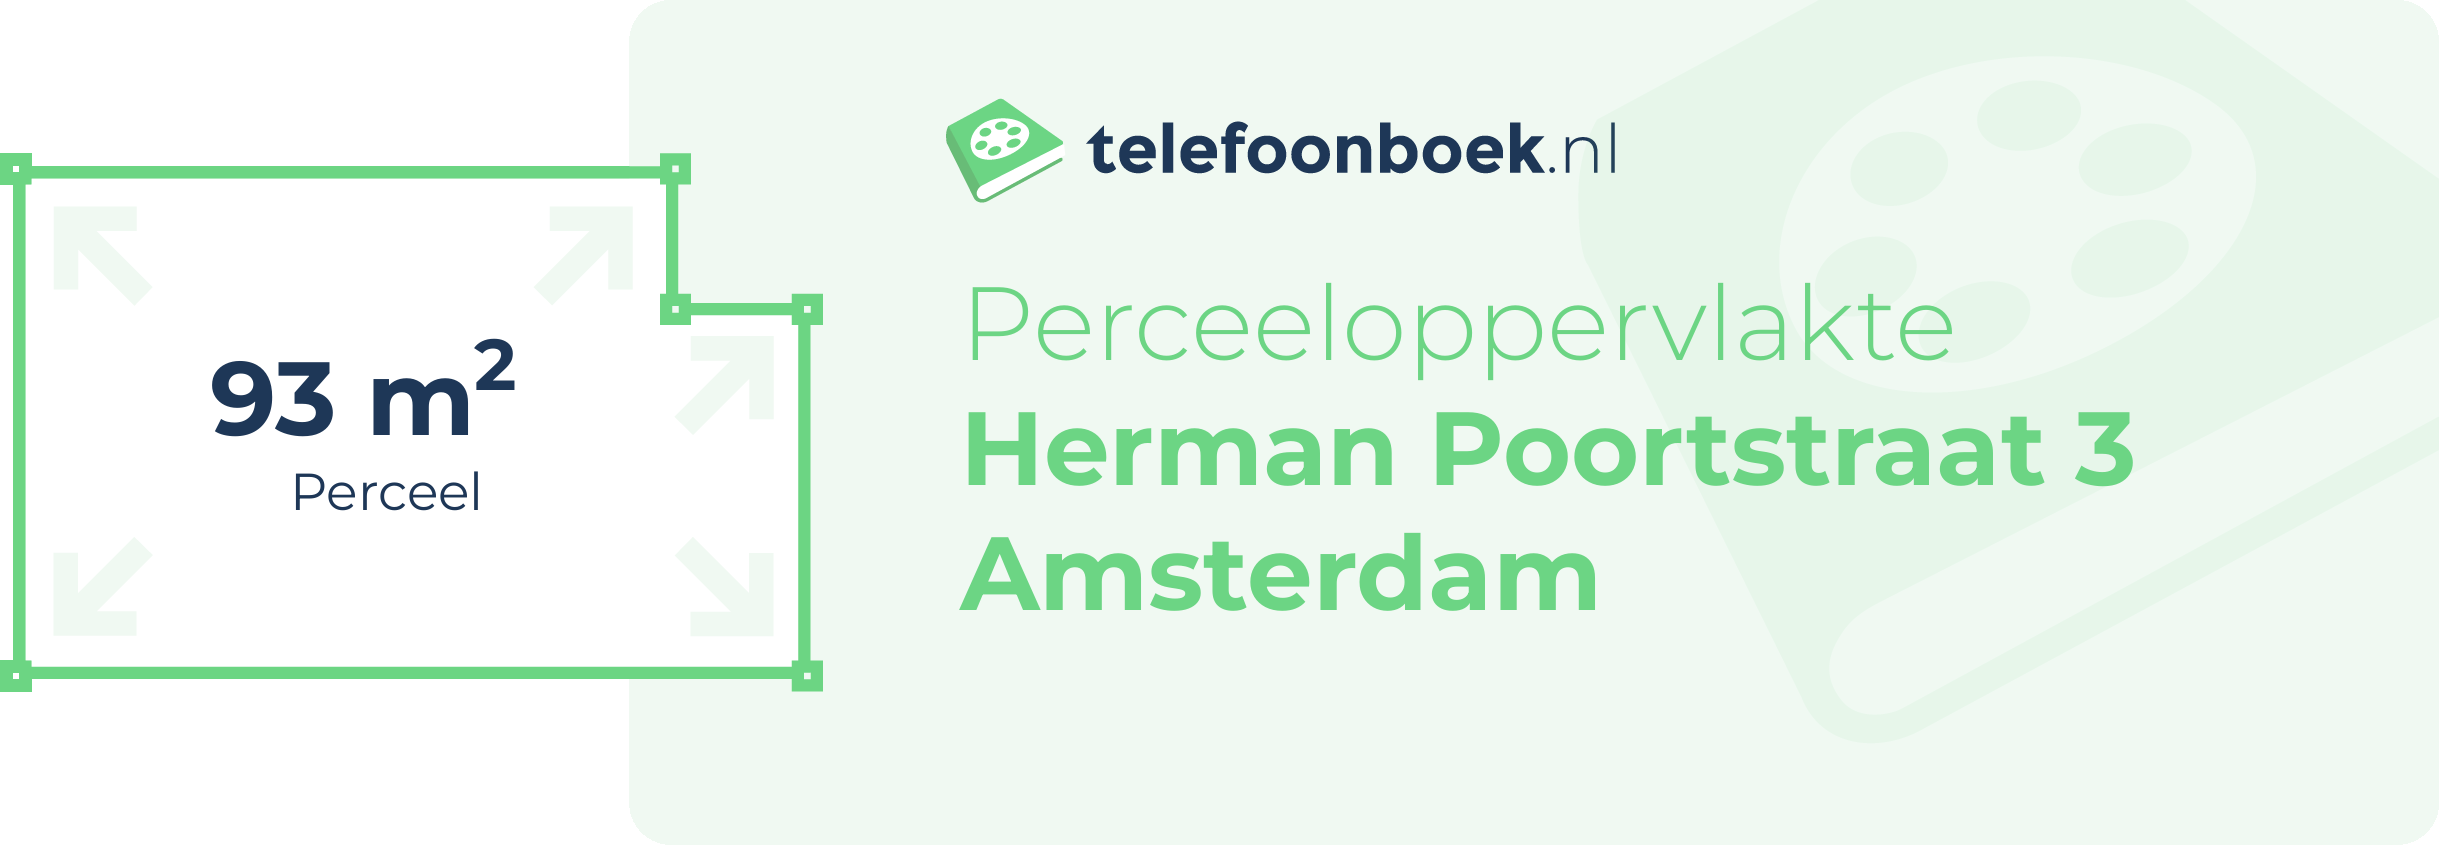 Perceeloppervlakte Herman Poortstraat 3 Amsterdam